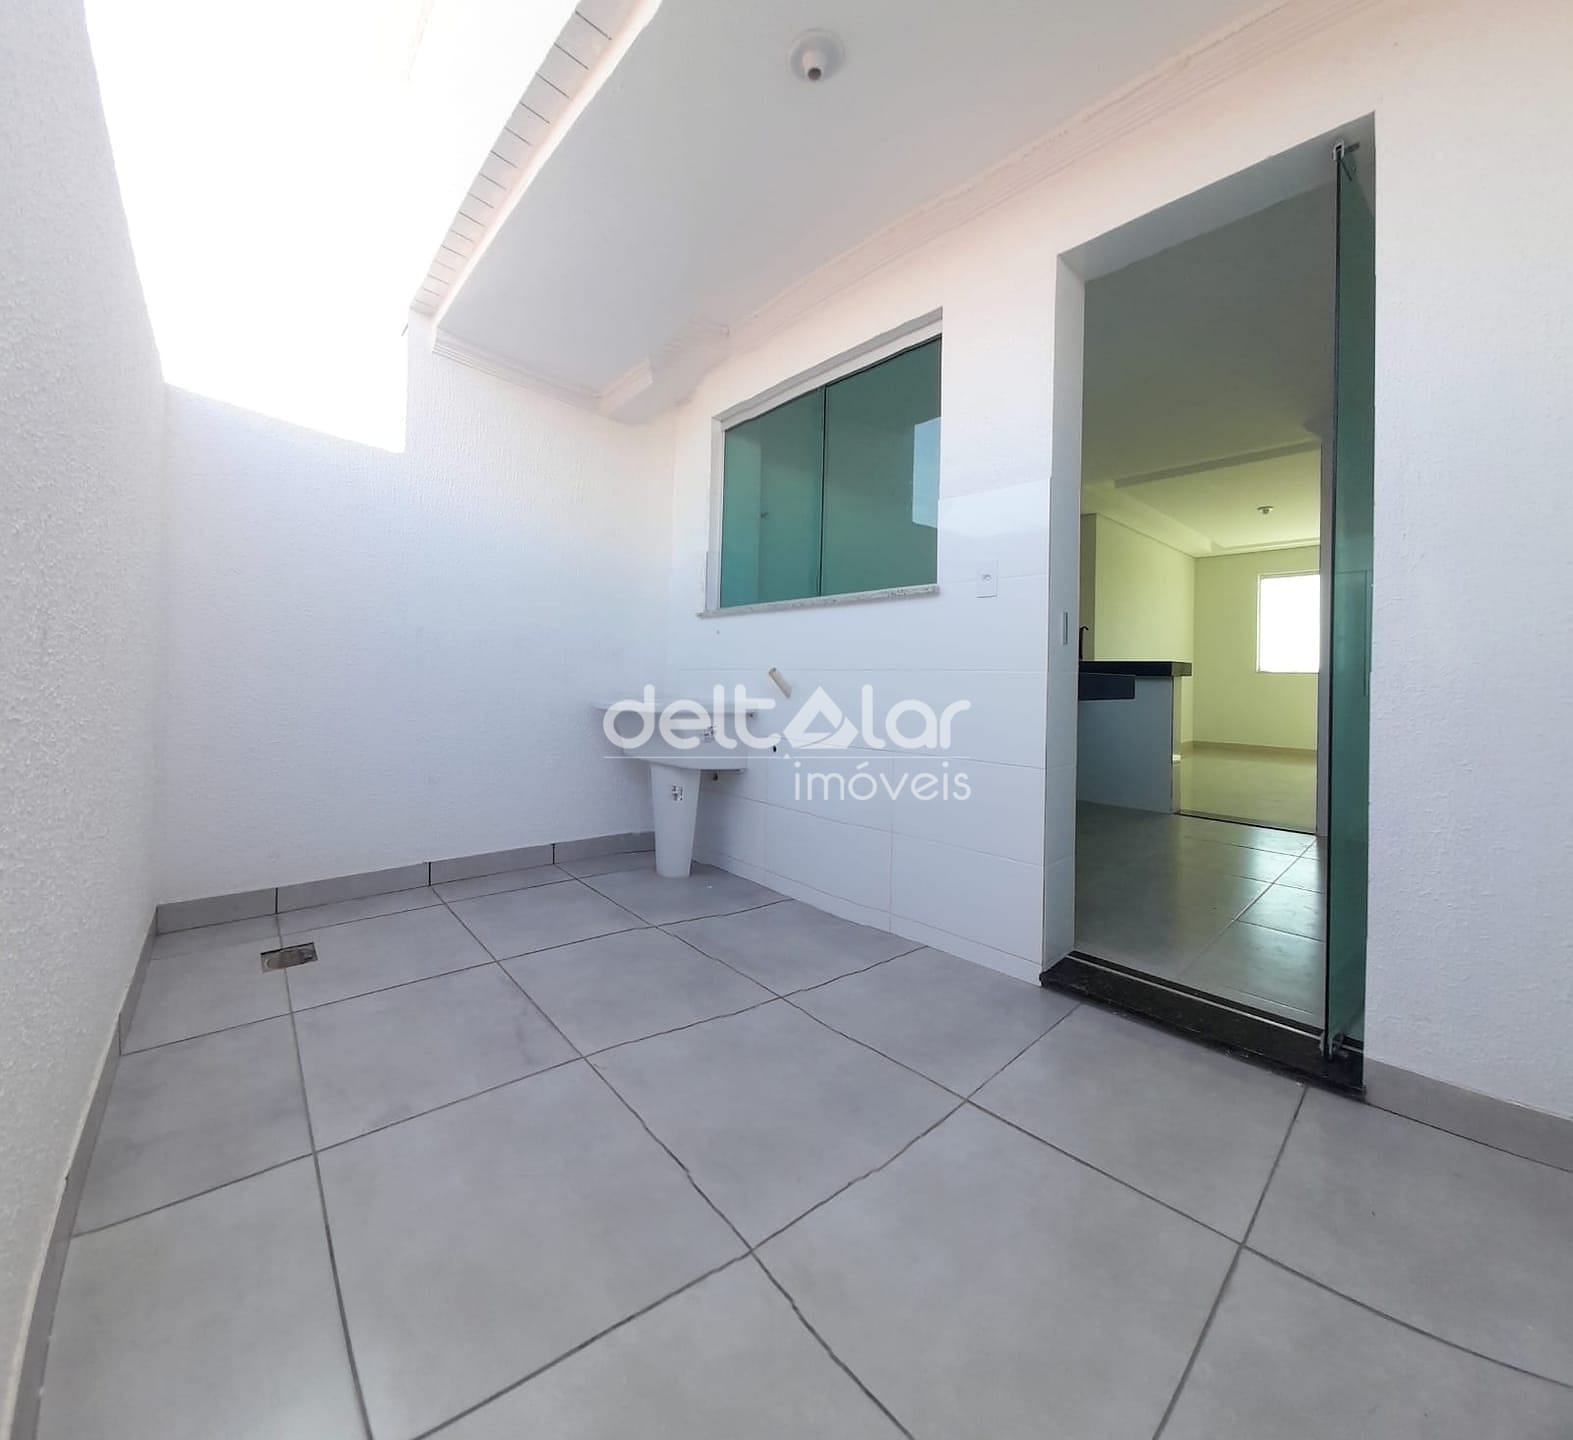 Apartamento em Piratininga (Venda Nova), Belo Horizonte/MG de 55m² 2 quartos à venda por R$ 294.000,00